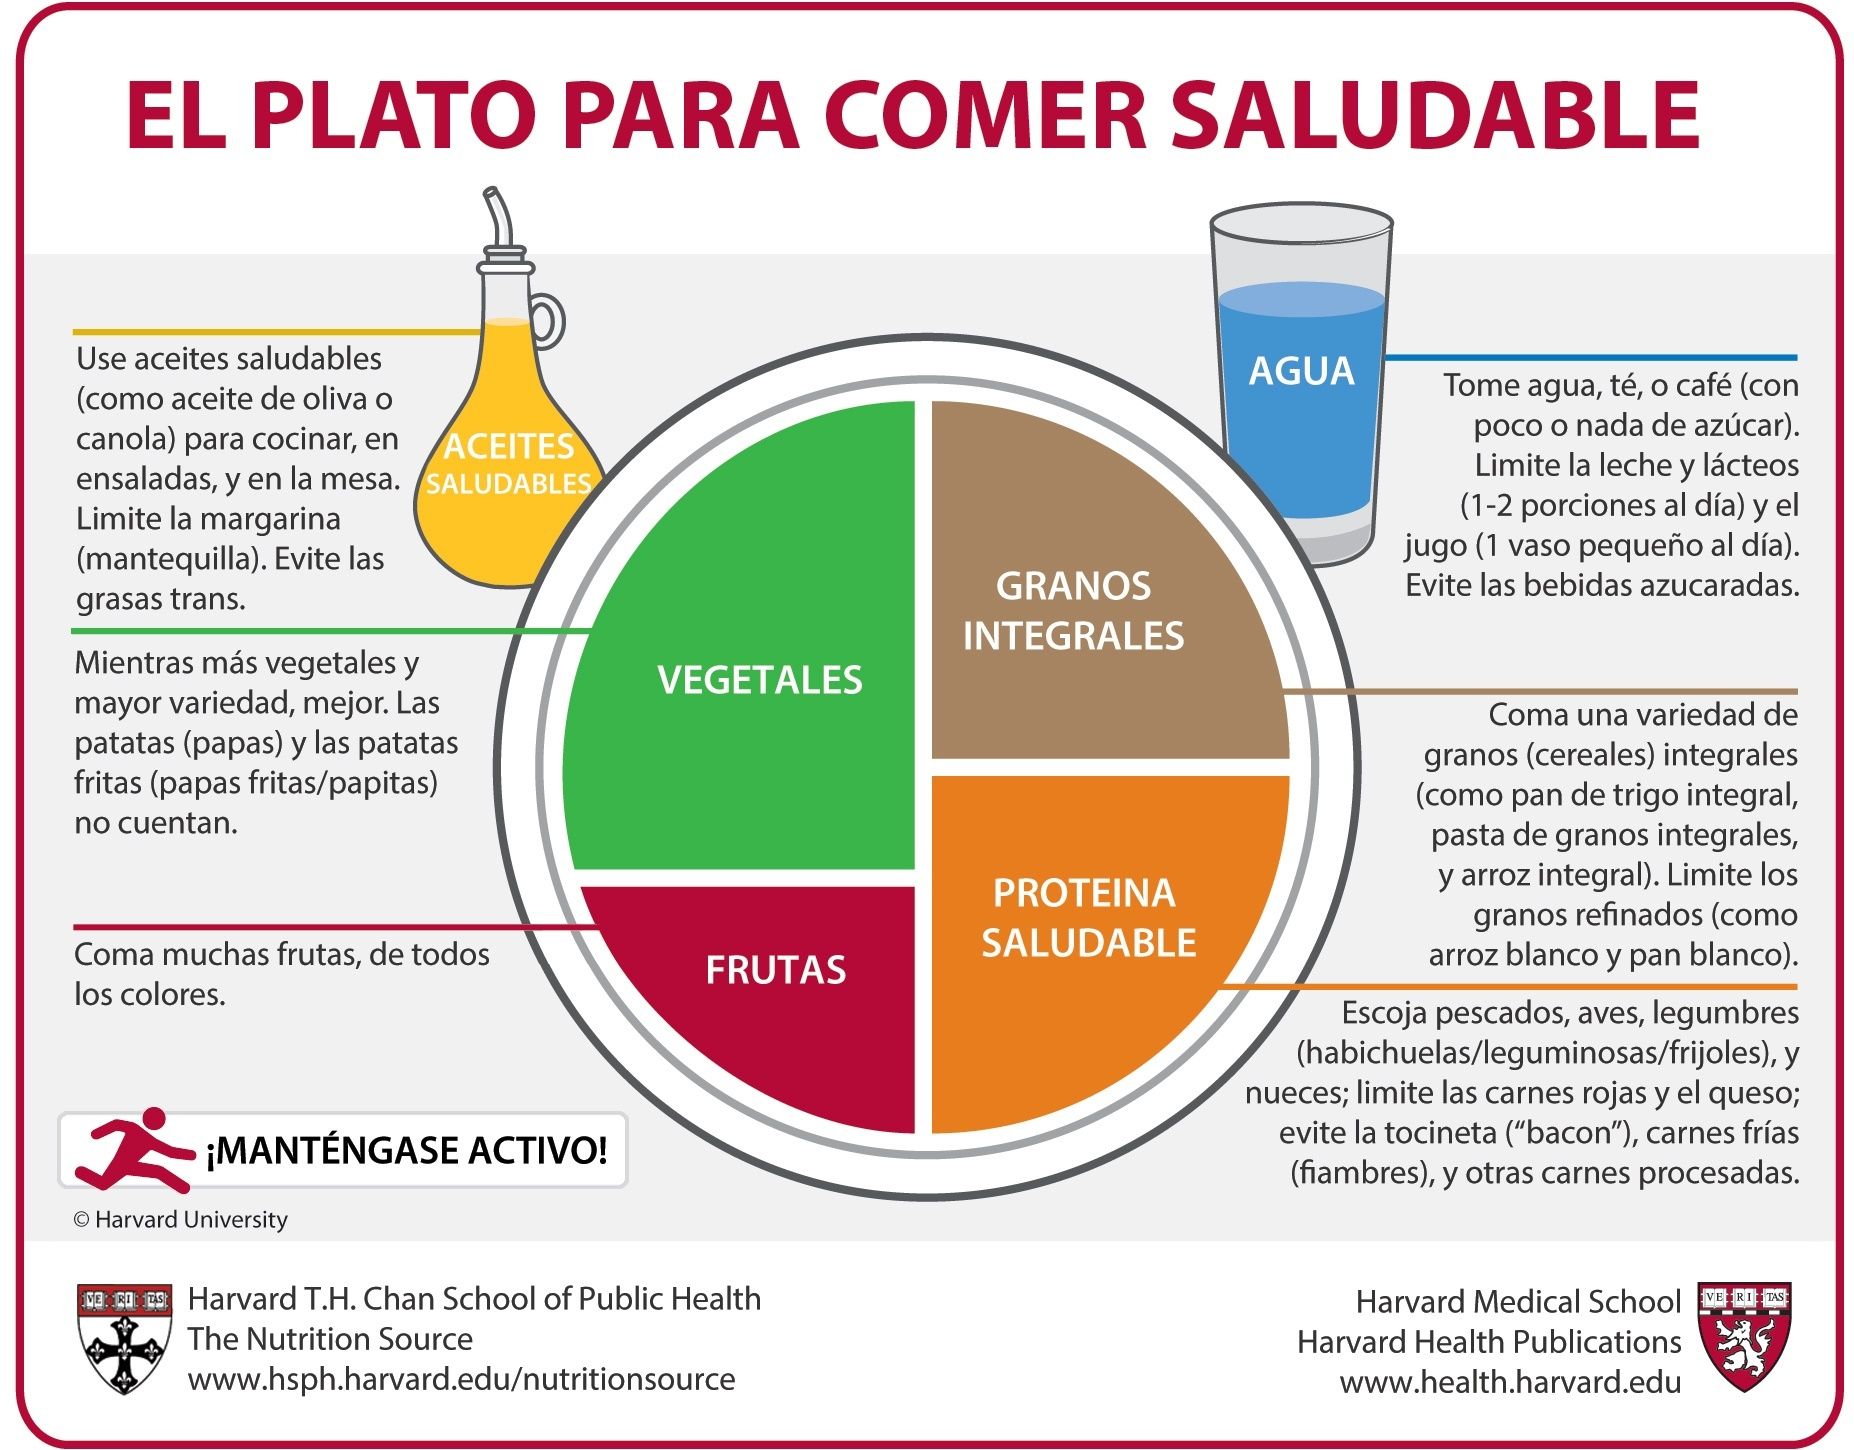 El plato de Harvard es una herramienta de educación alimentaria desarrollada por expertos en nutrición de la Escuela de Salud Pública de Harvard